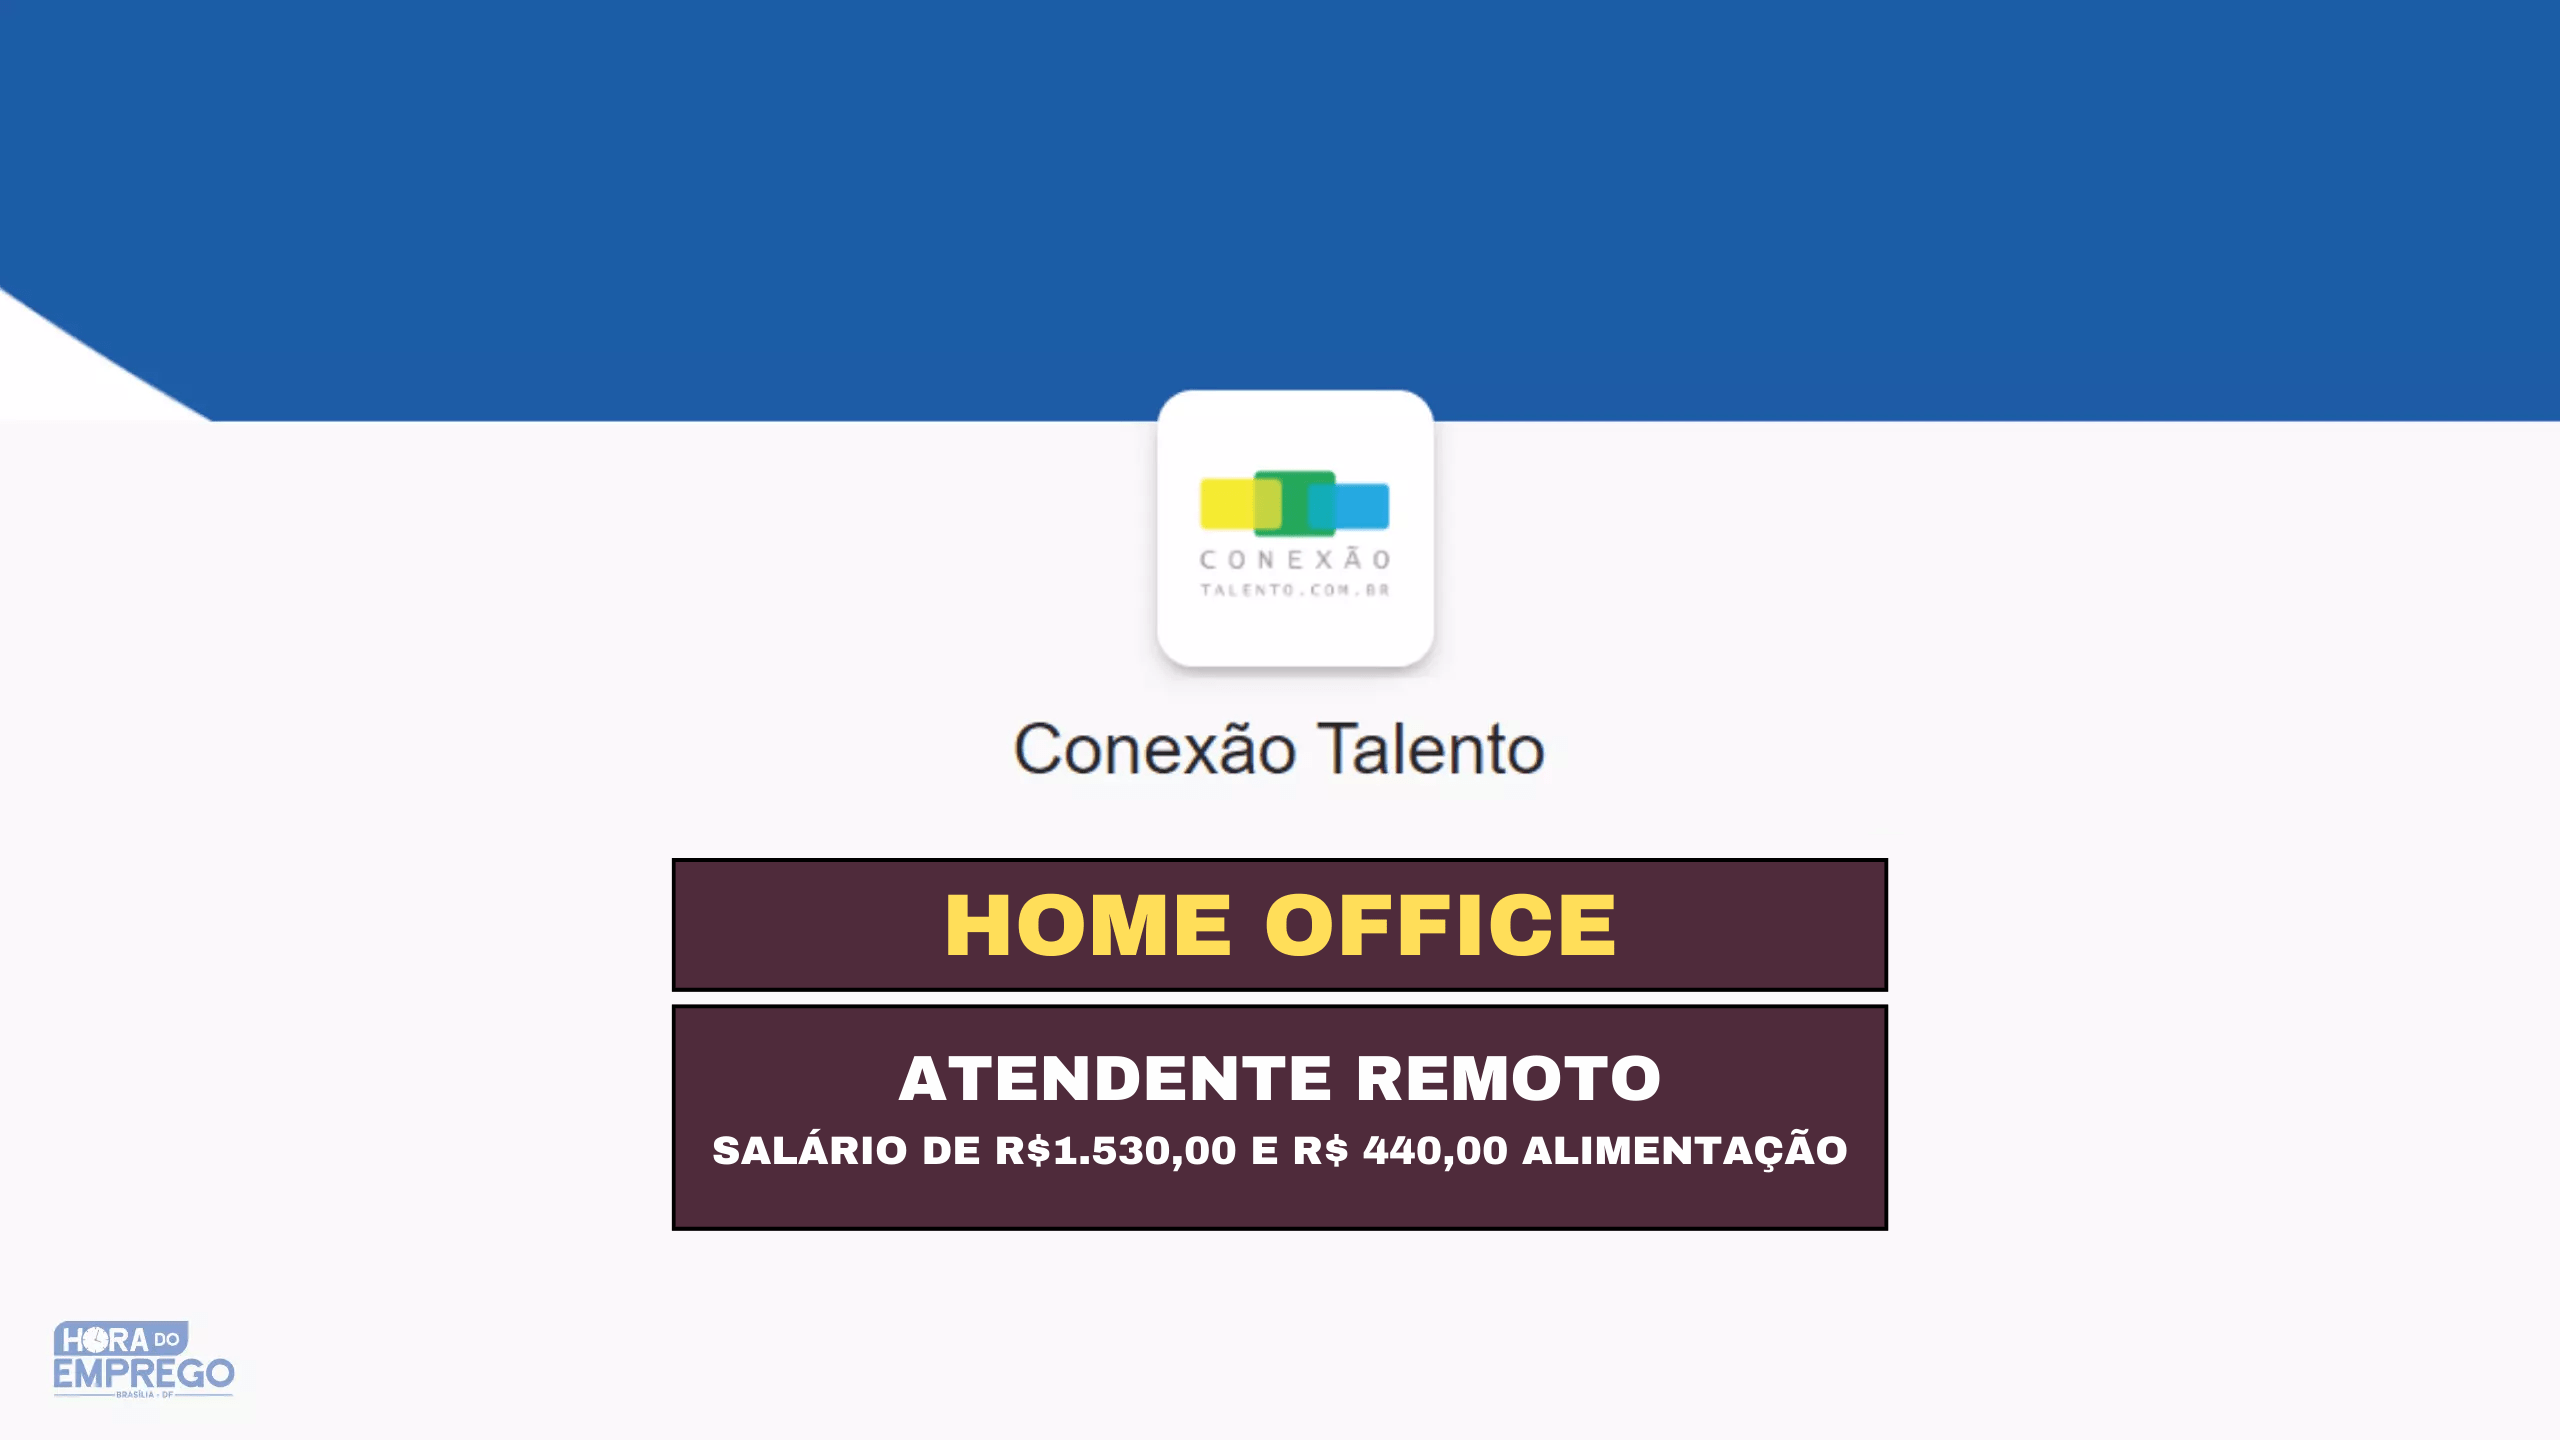 Conexão Talentos abre vagas HOME OFFICE para Atendimento Remoto e Auxiliar Administrativo; Veja como fazer seu cadastro